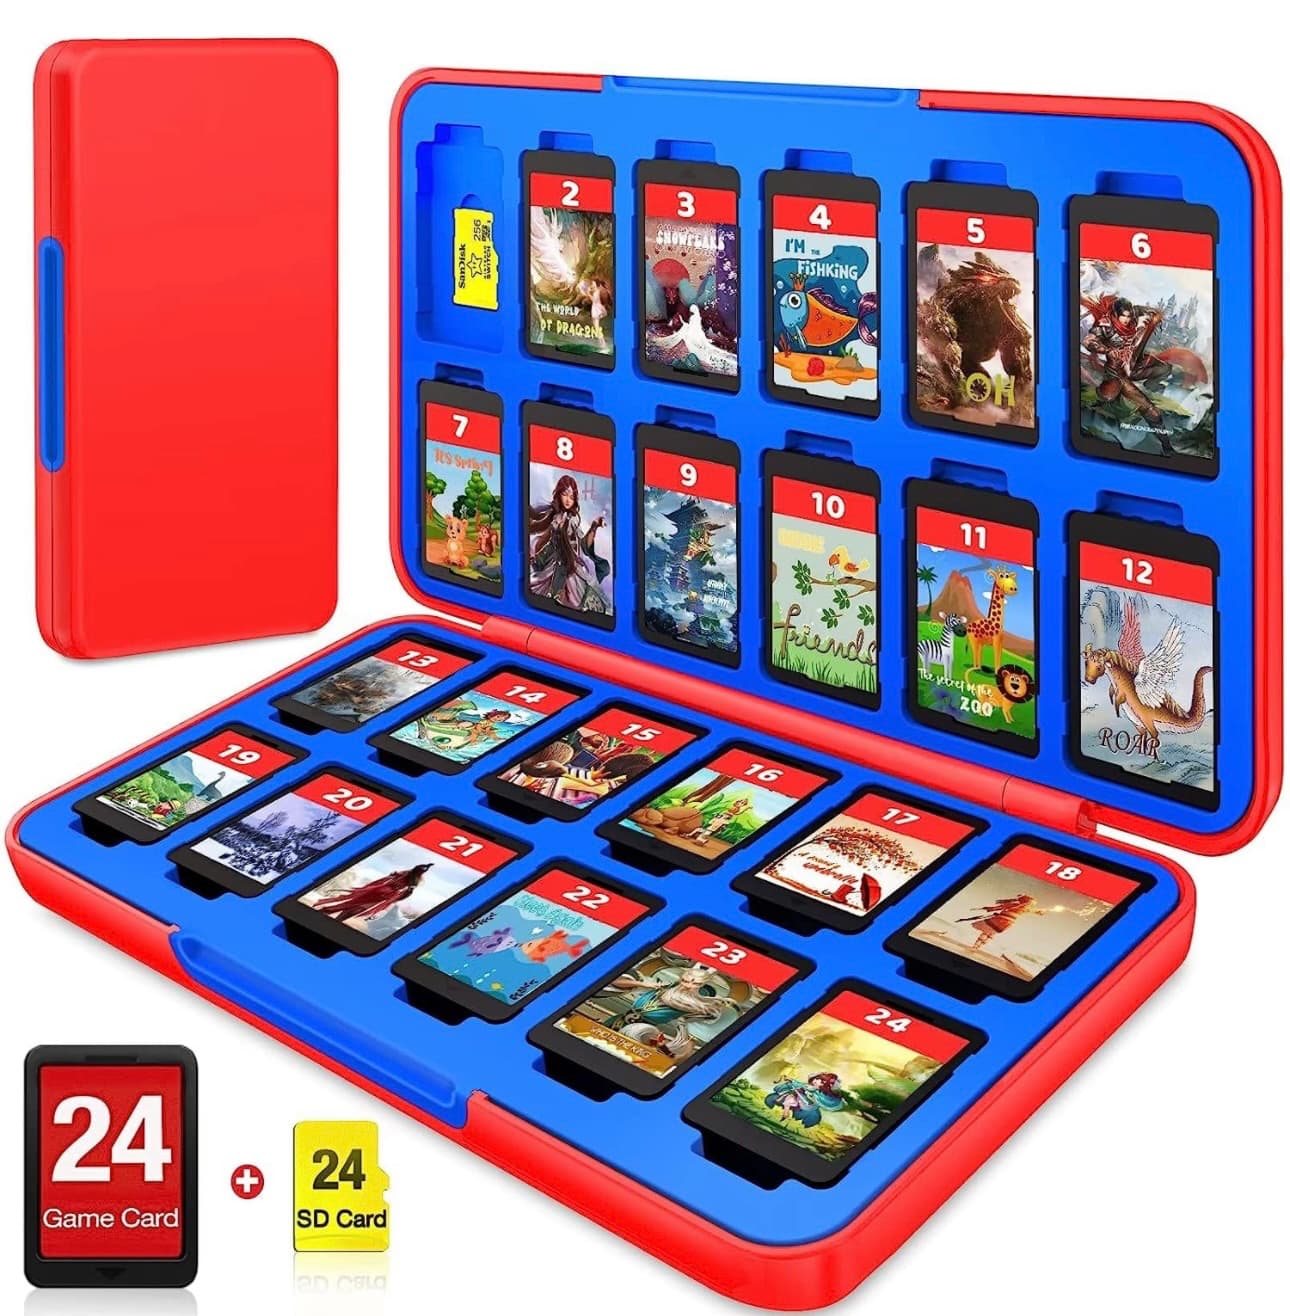 Nintendo Switch 24 game cartridge case.